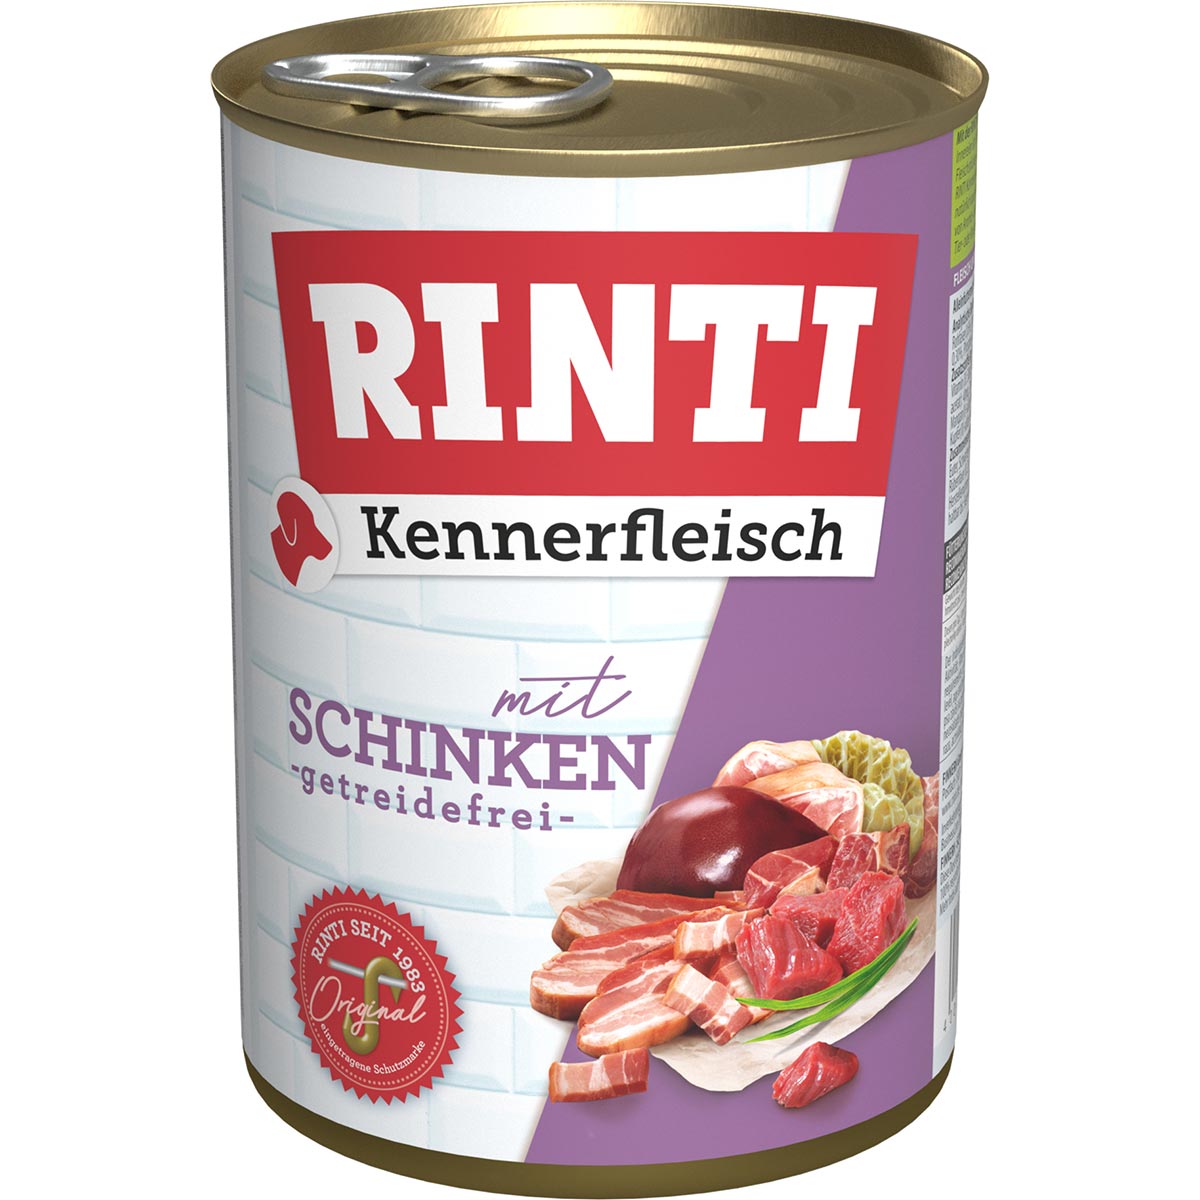 Rinti Kennerfleisch mit Schinken 24x400g von Rinti